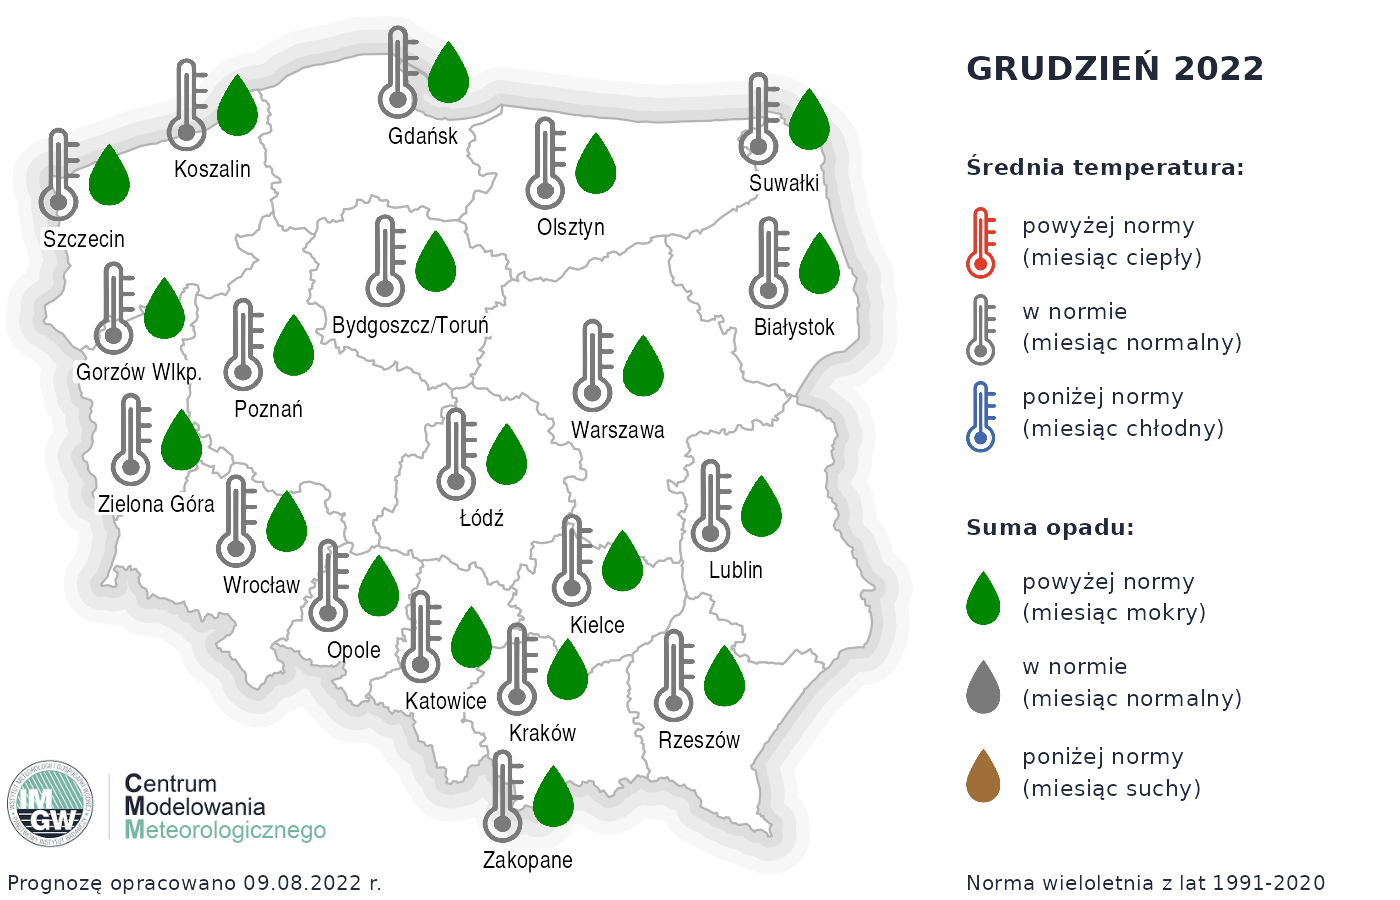 Prognoza średniej miesięcznej temperatury powietrza i miesięcznej sumy opadów atmosferycznych na grudzień 2022 r. dla wybranych miast w Polsce.